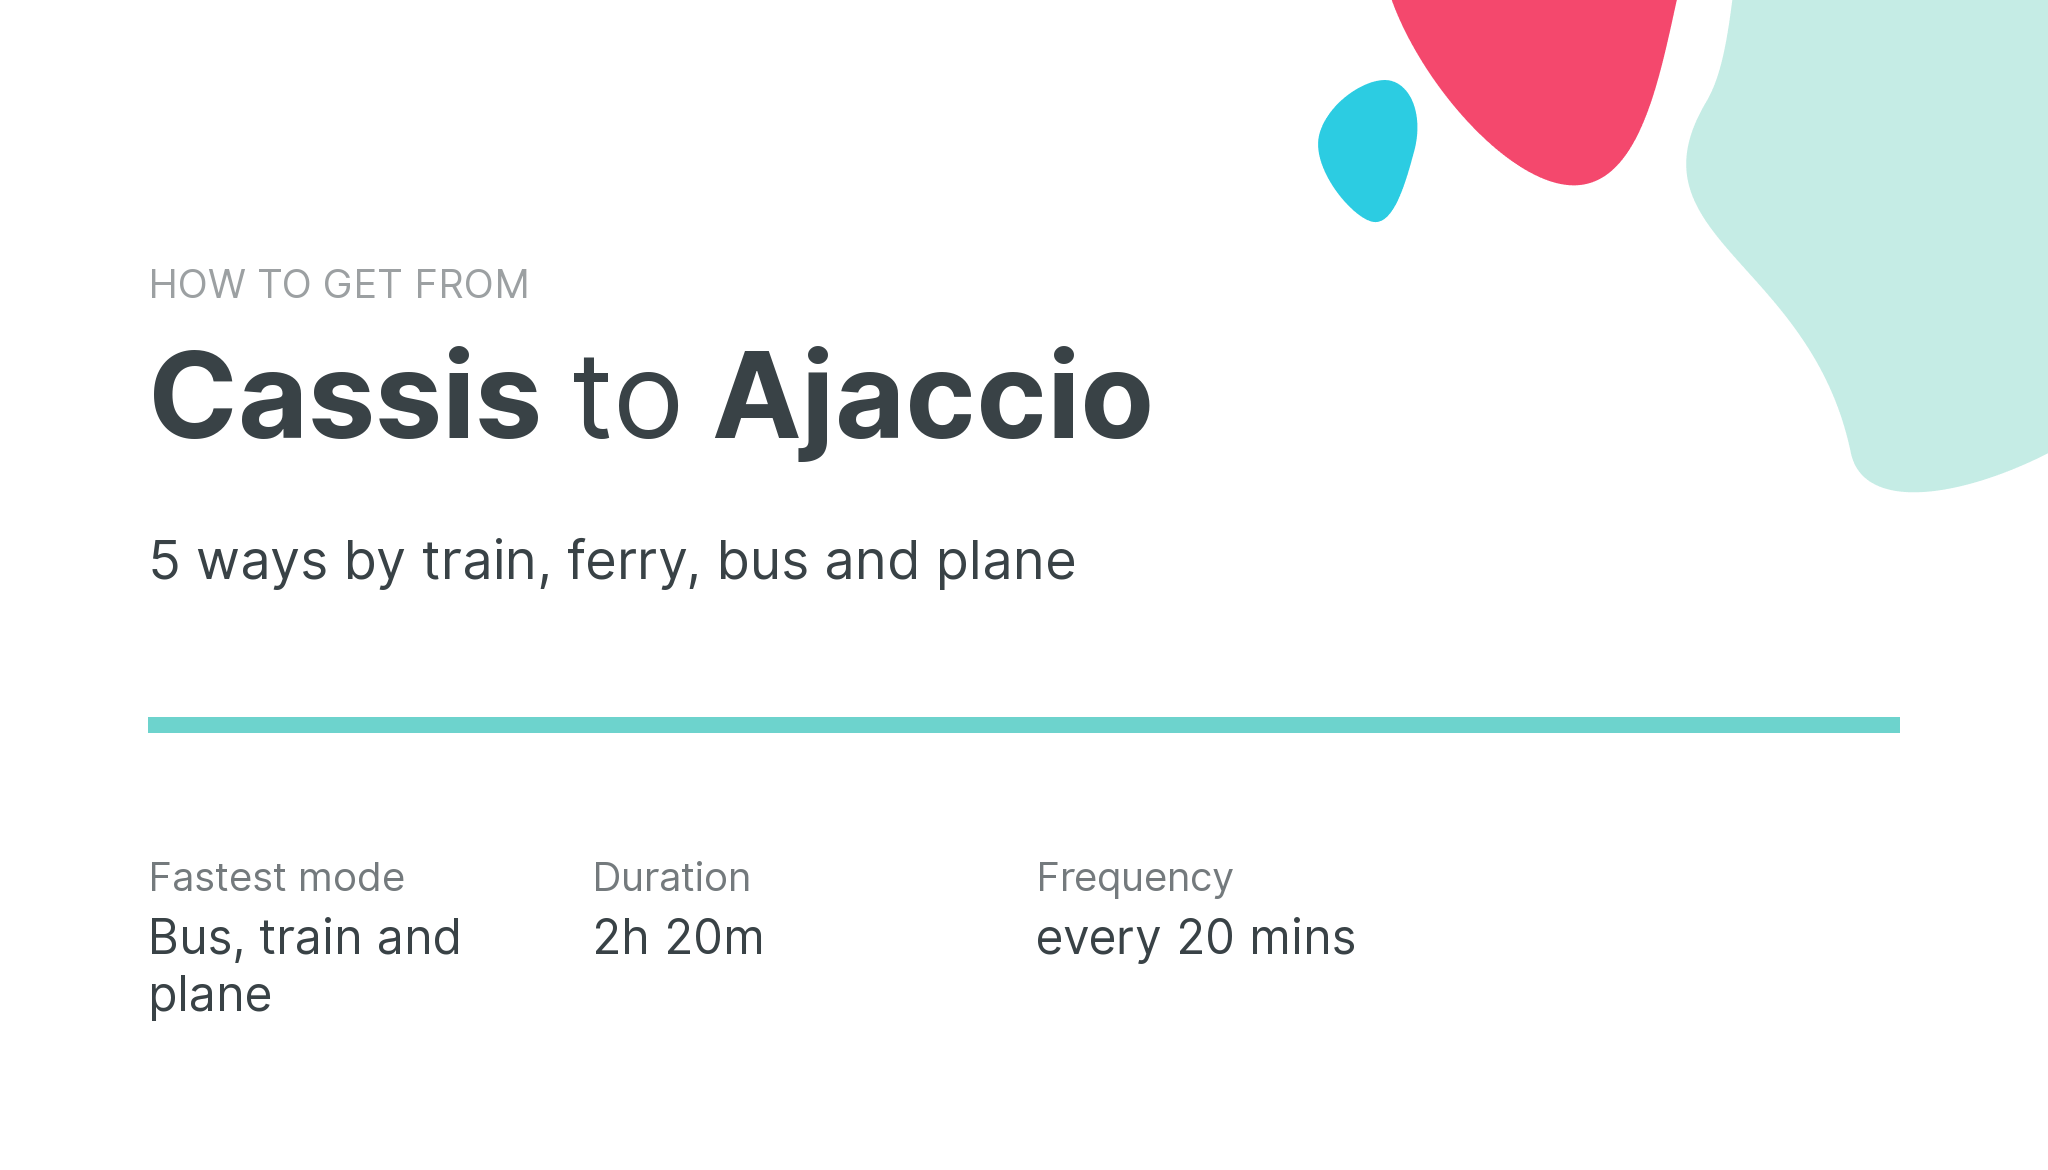 How do I get from Cassis to Ajaccio